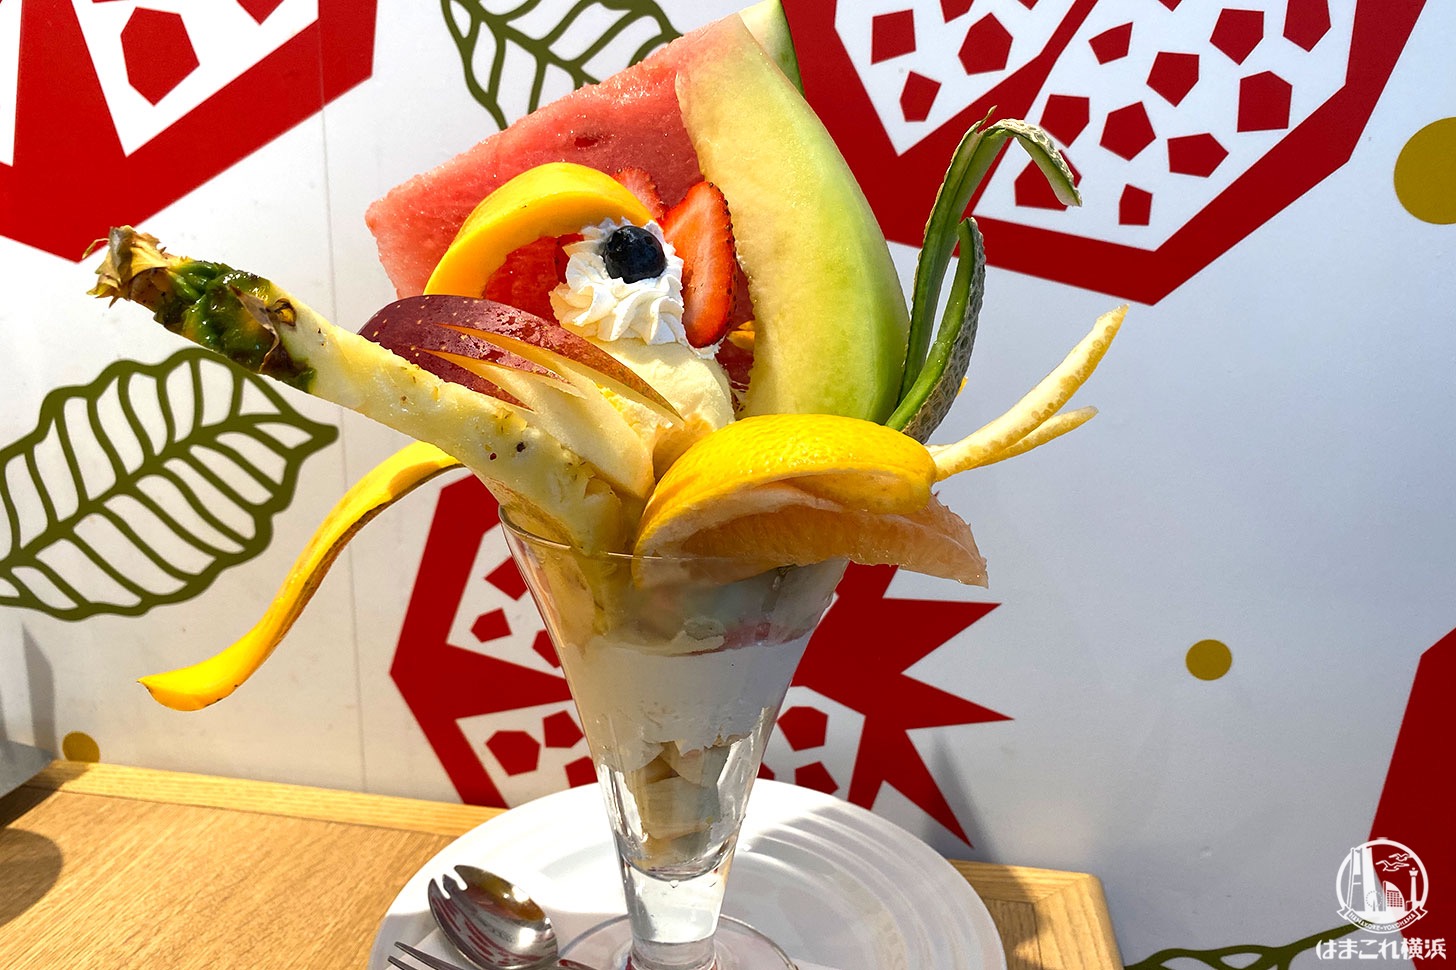 果実園リーベル横浜で超豪快フルーツパフェと季節限定和栗パフェ食べてきた！